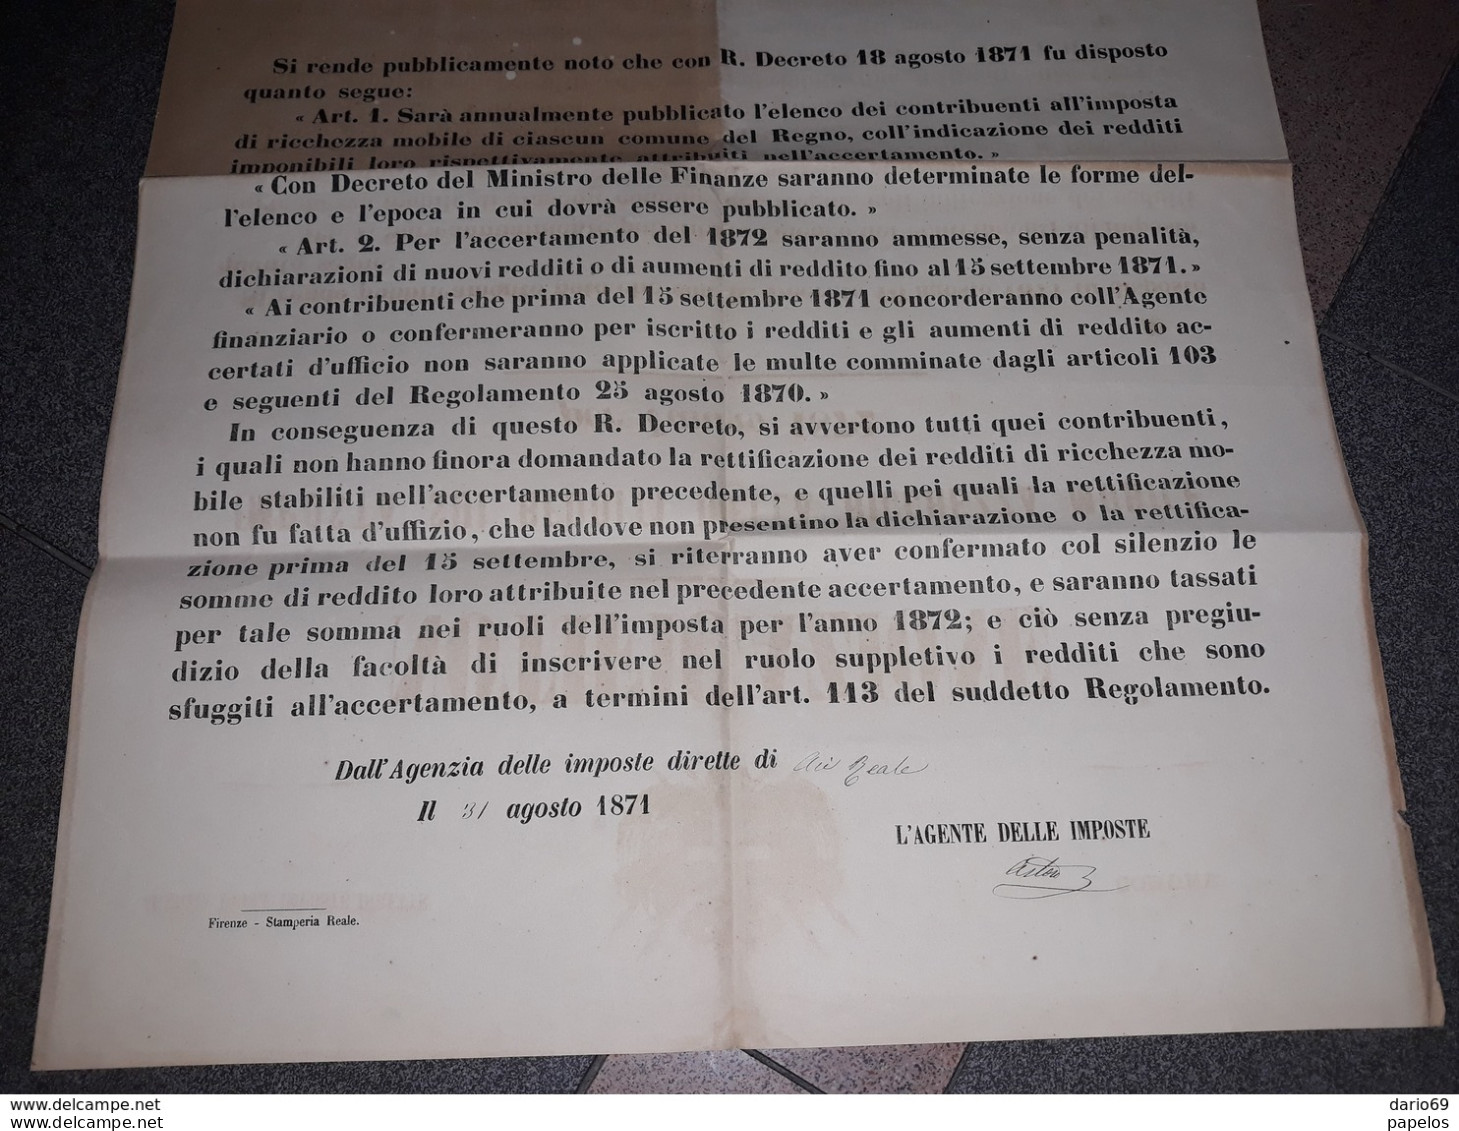 1871 Manifesto Imposte Sui Redditi Della Ricchezza Mobile - Historische Dokumente